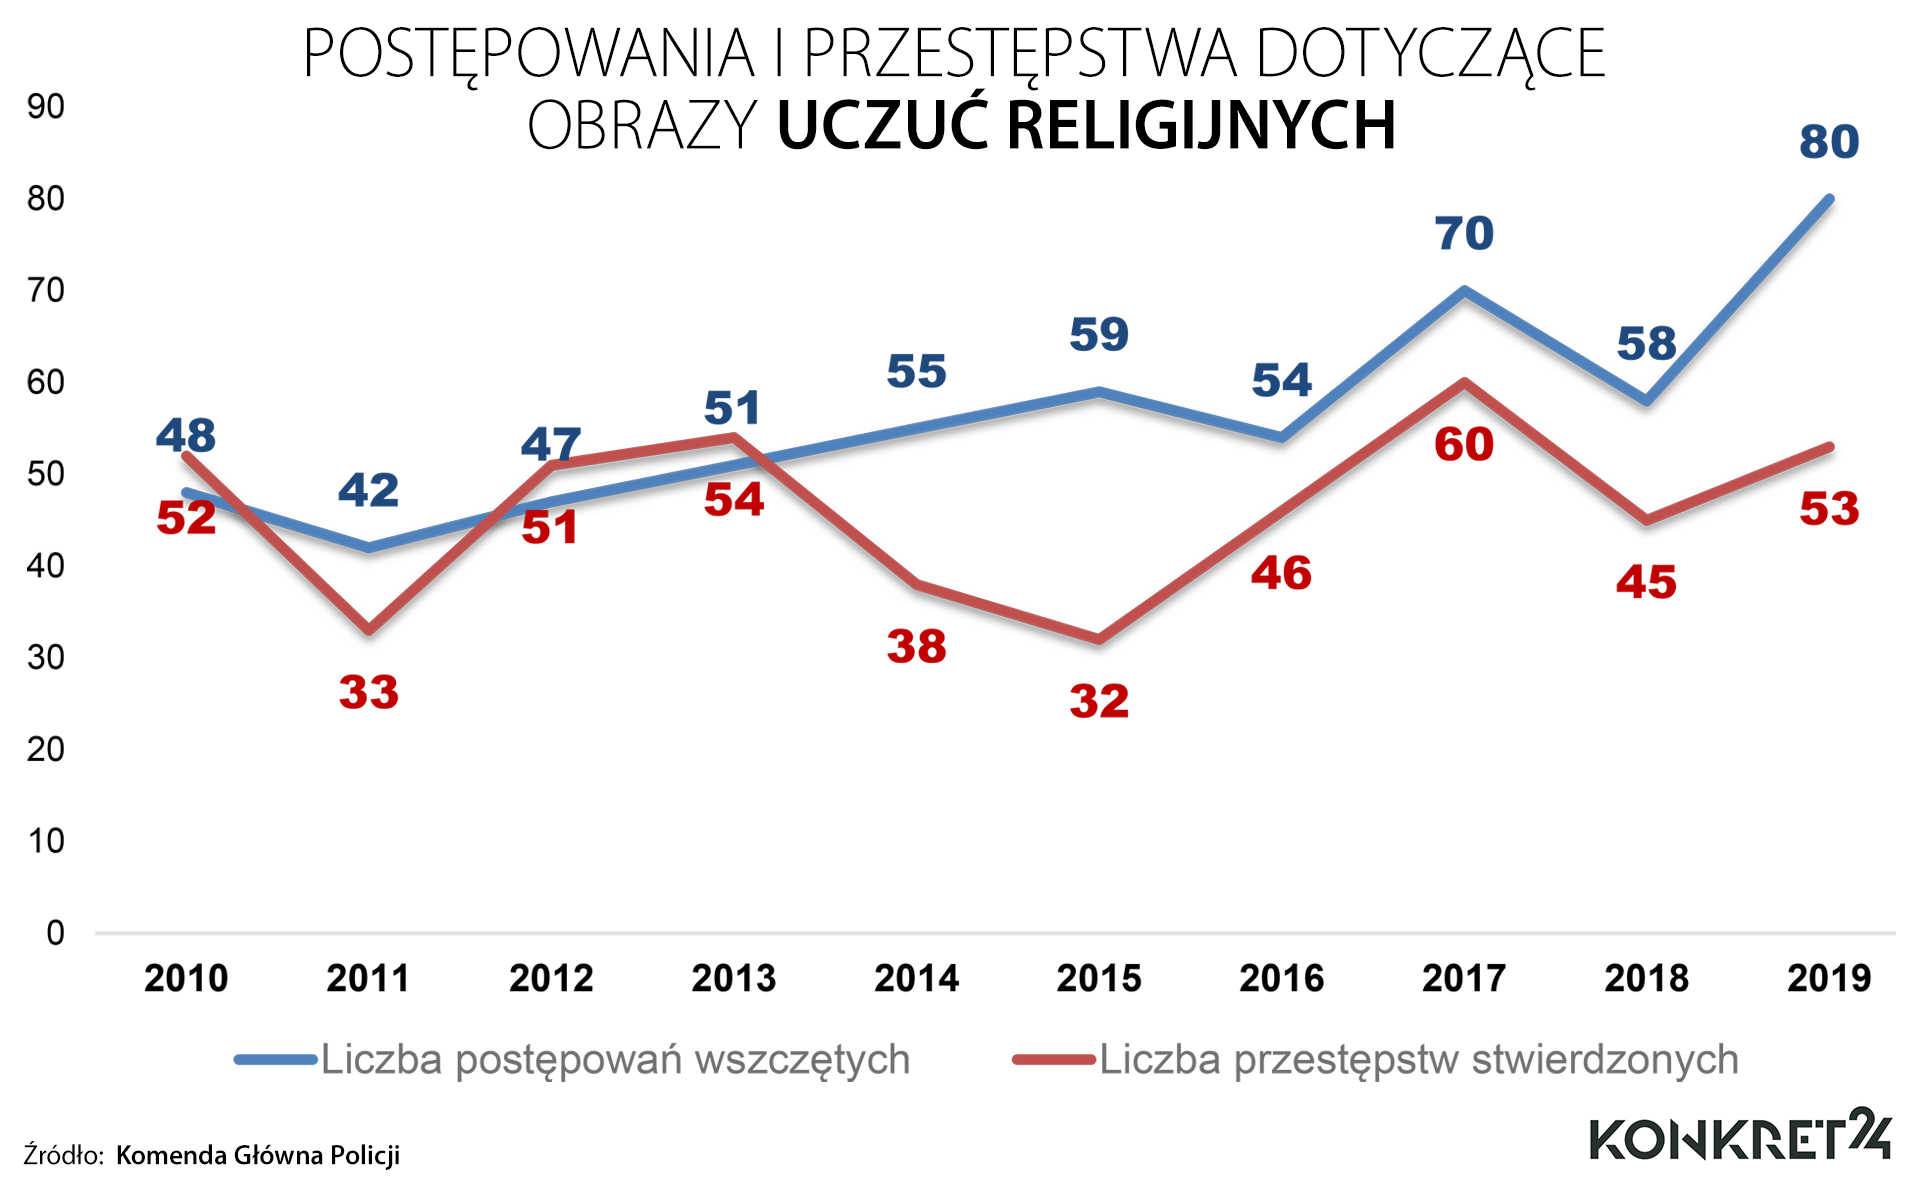 Postępowania i przestępstwa w Polsce dotyczące obrazy uczuć religijnych 